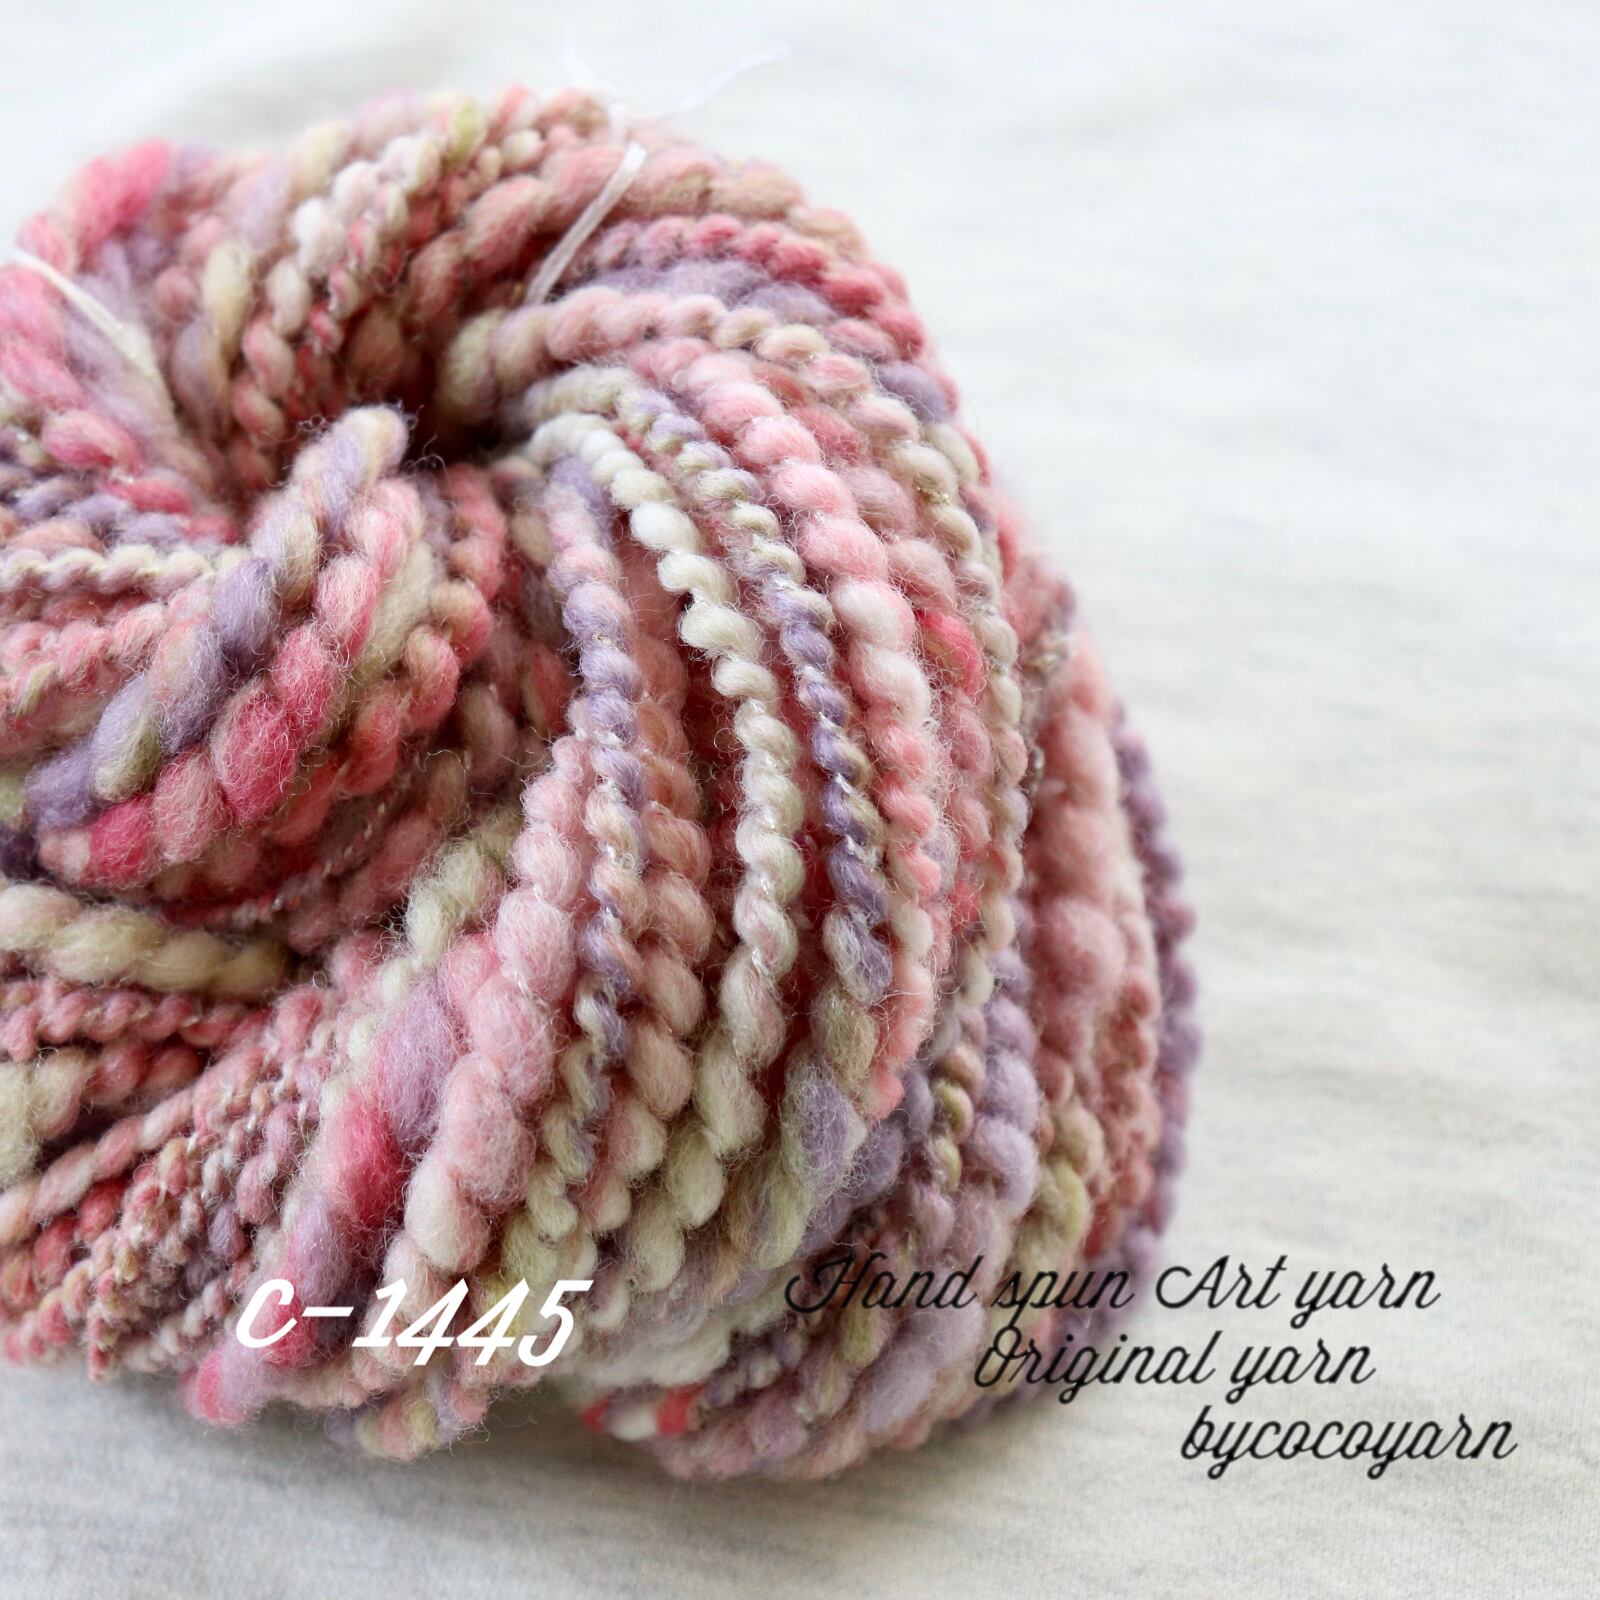 アートヤーン 手紡ぎ糸 毛糸(c-389 | miｰtoco shop/ヴィンテージビーズ